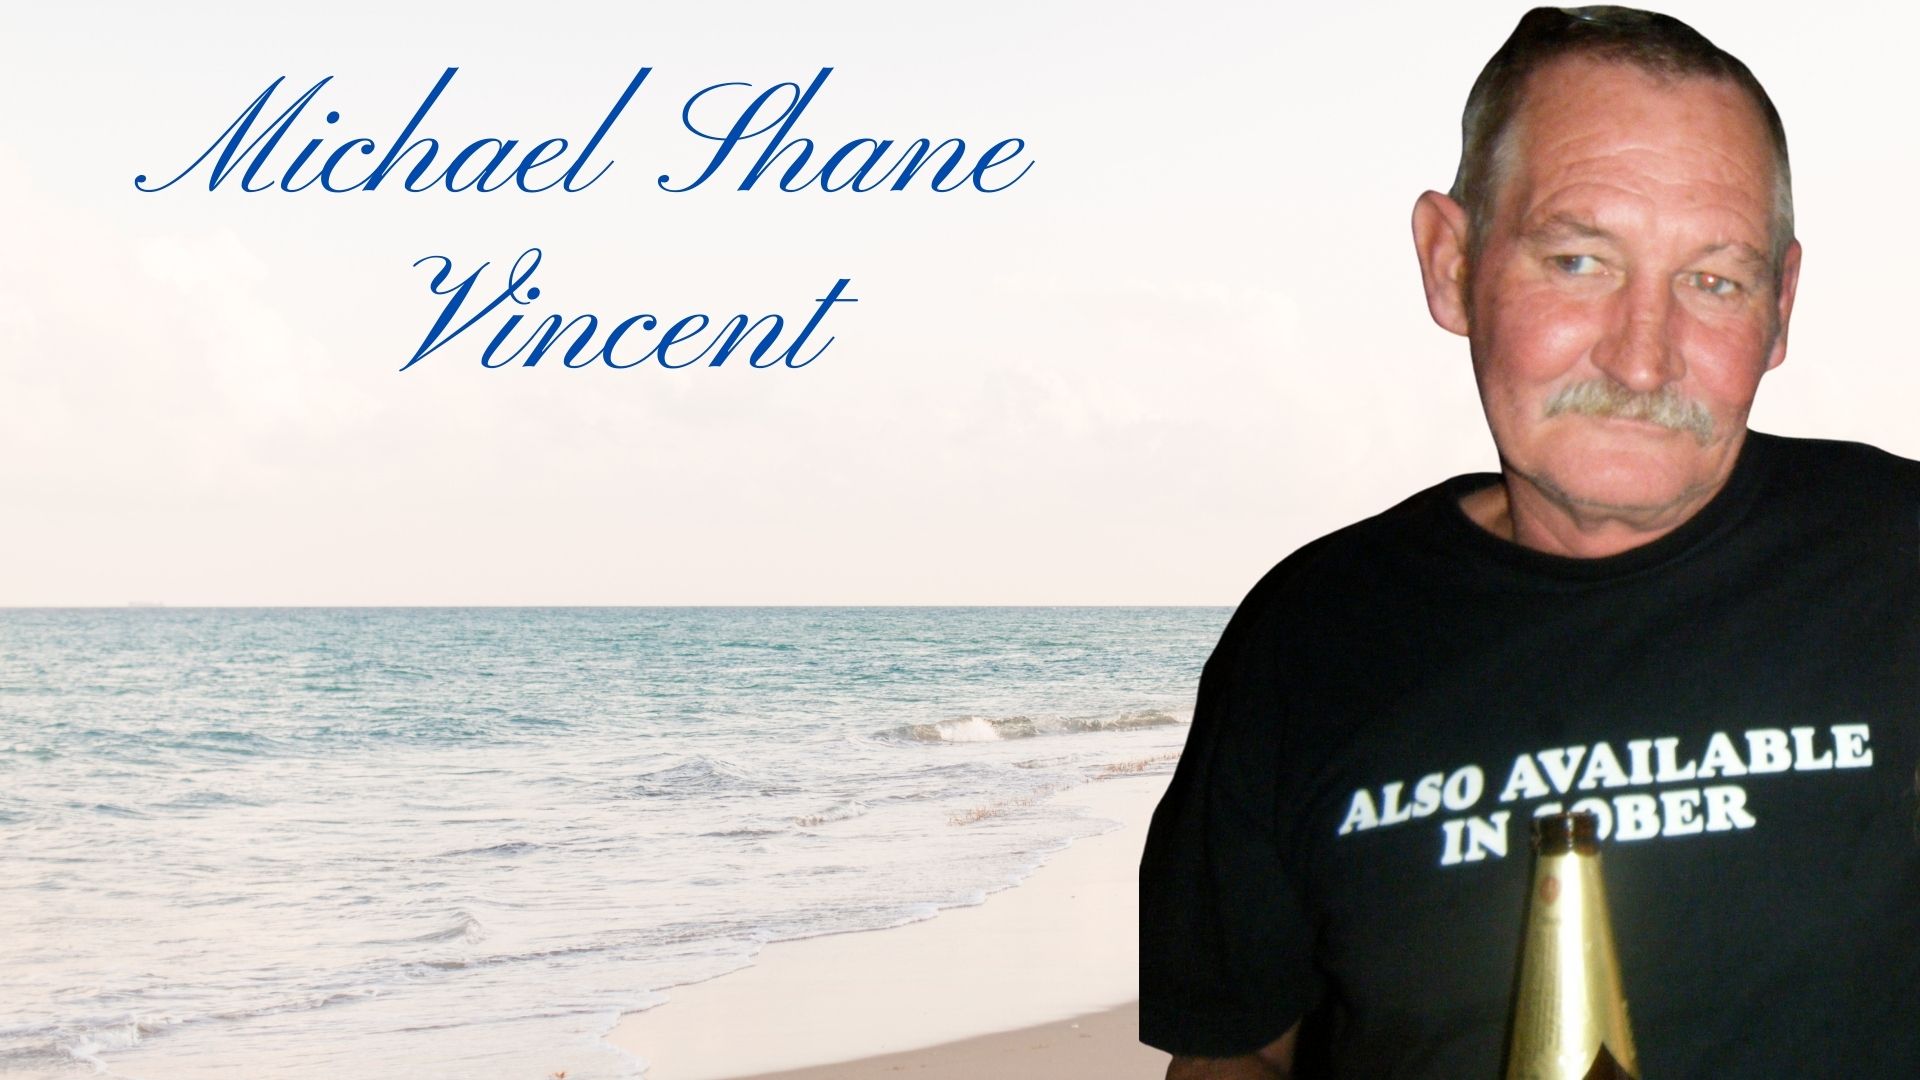 Michael Shane Vincent